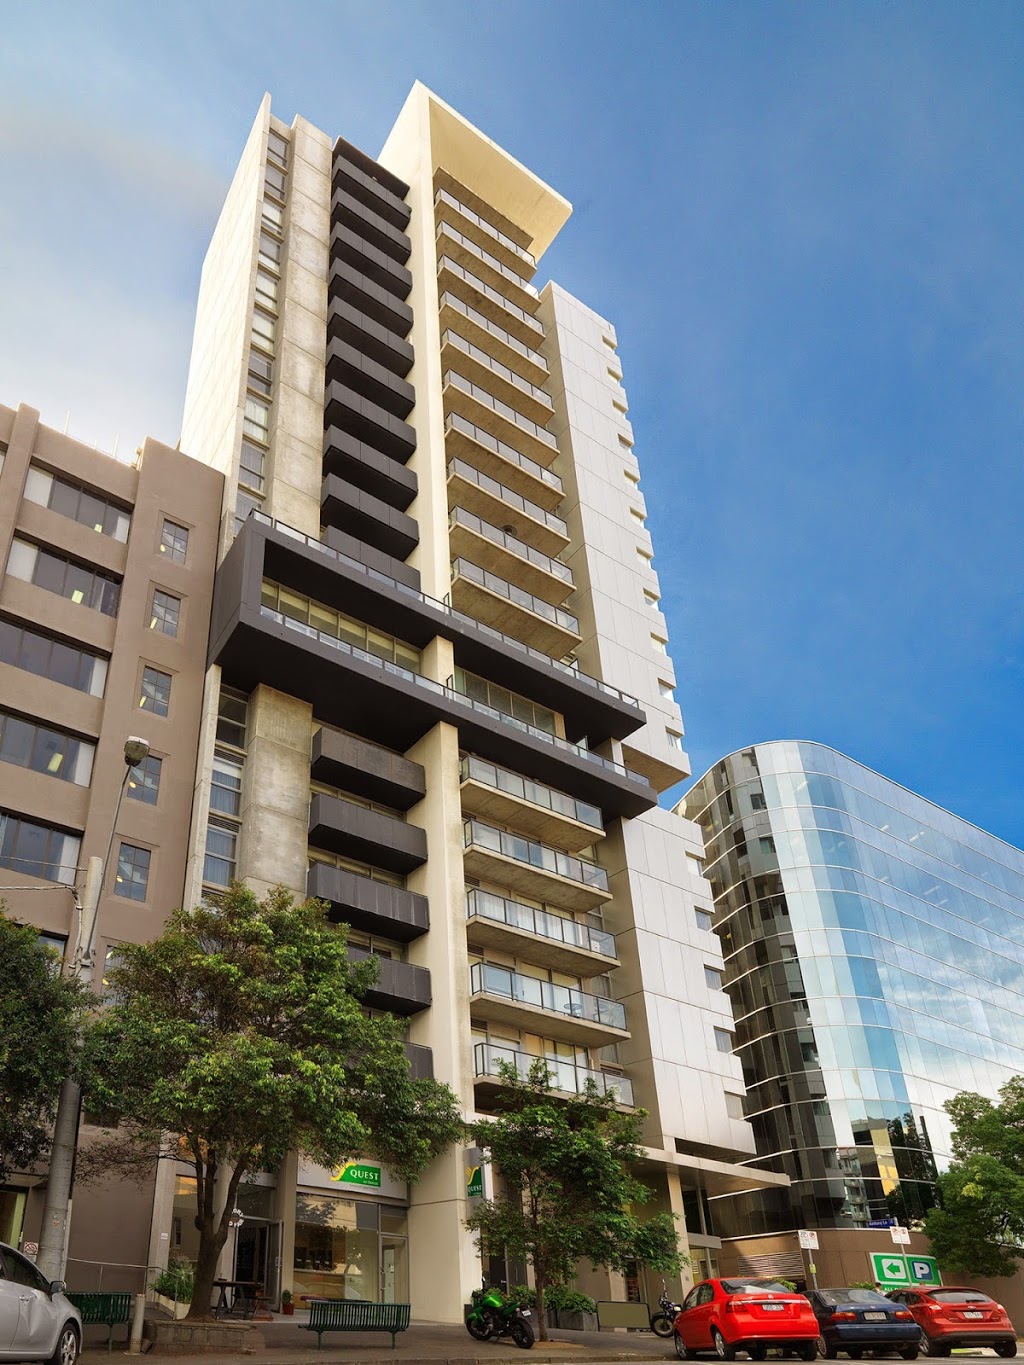 Quest on Dorcas Apartment Hotel | lodging | 8 Dorcas Street, South Melbourne VIC 3205, Australia | 0396981500 OR +61 3 9698 1500